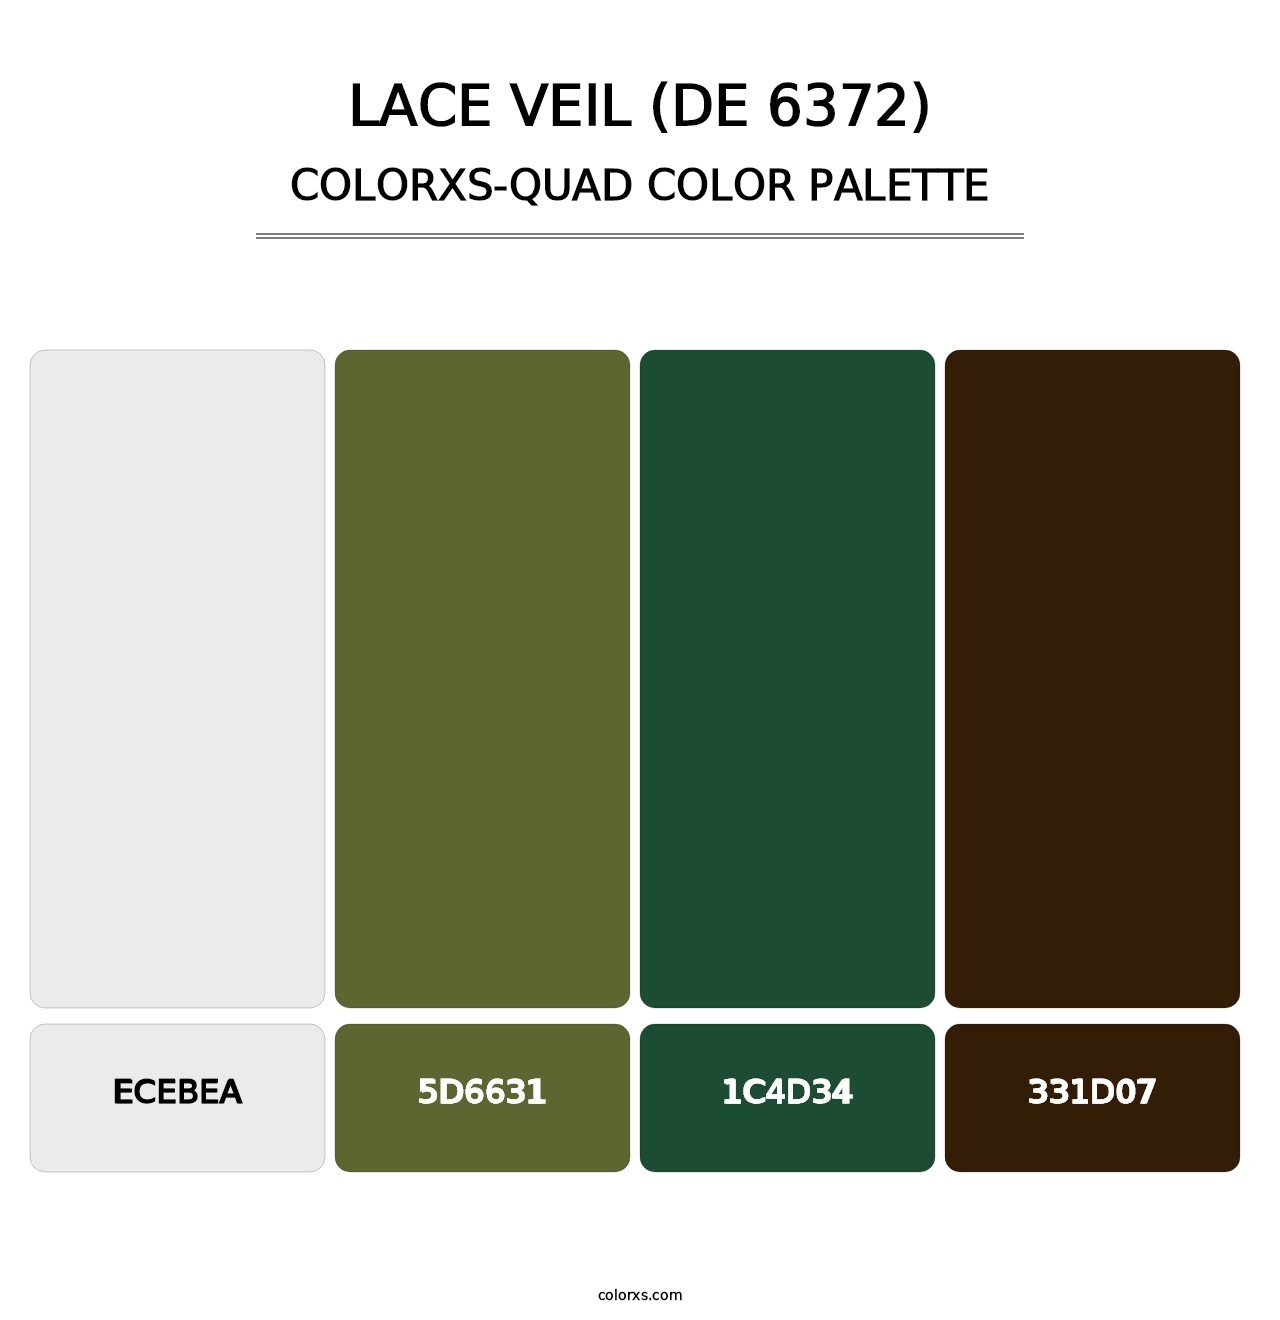 Lace Veil (DE 6372) - Colorxs Quad Palette